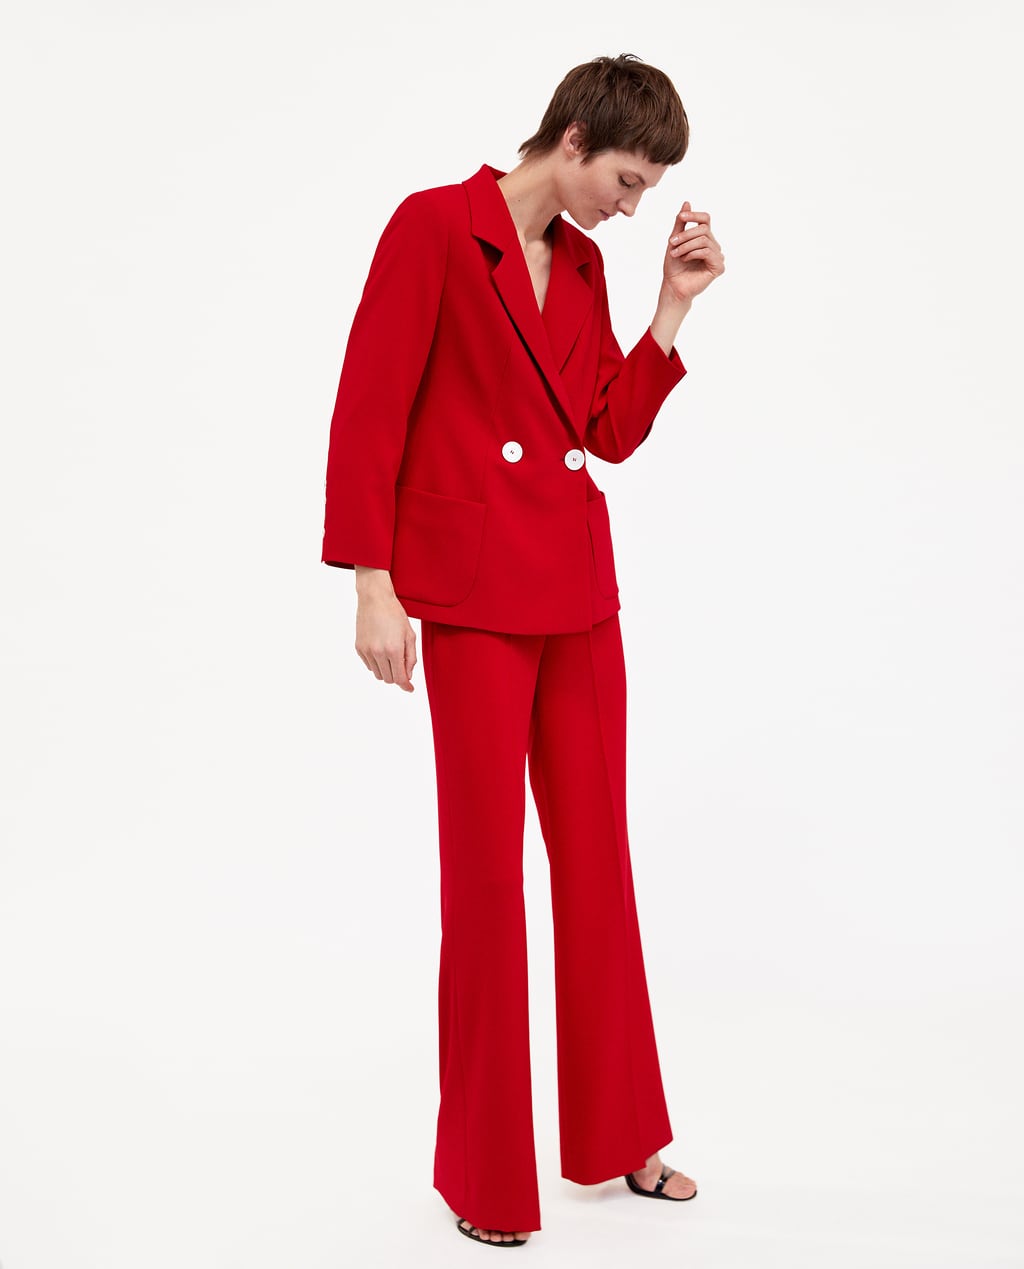 Traje chaqueta rojo y blusa de lunares: copia el look de la Reina Letizia con la colección de Zara primavera 2018 Modalia.es